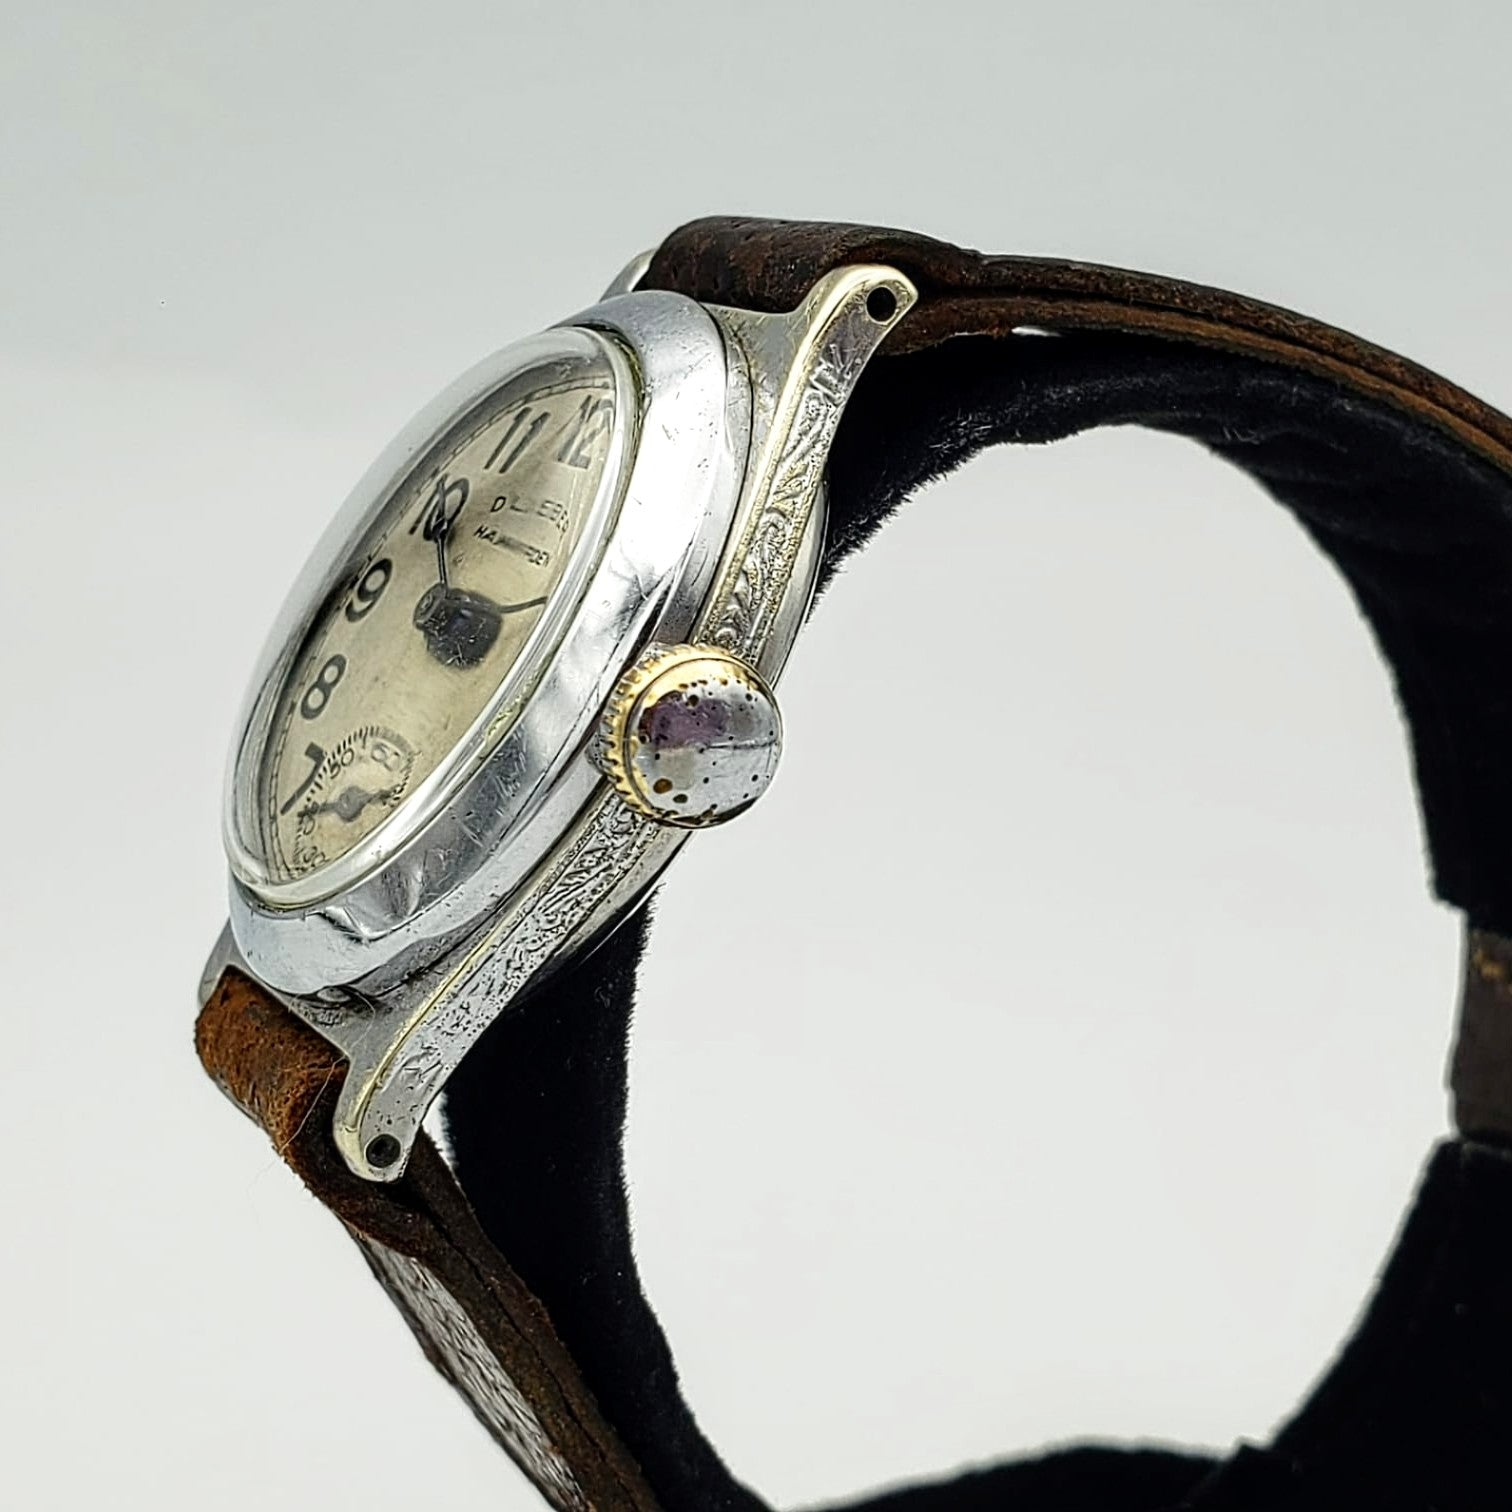 1905 Dueber-Hampden Wristwatch Military Service Size 3/0s 15J Watch